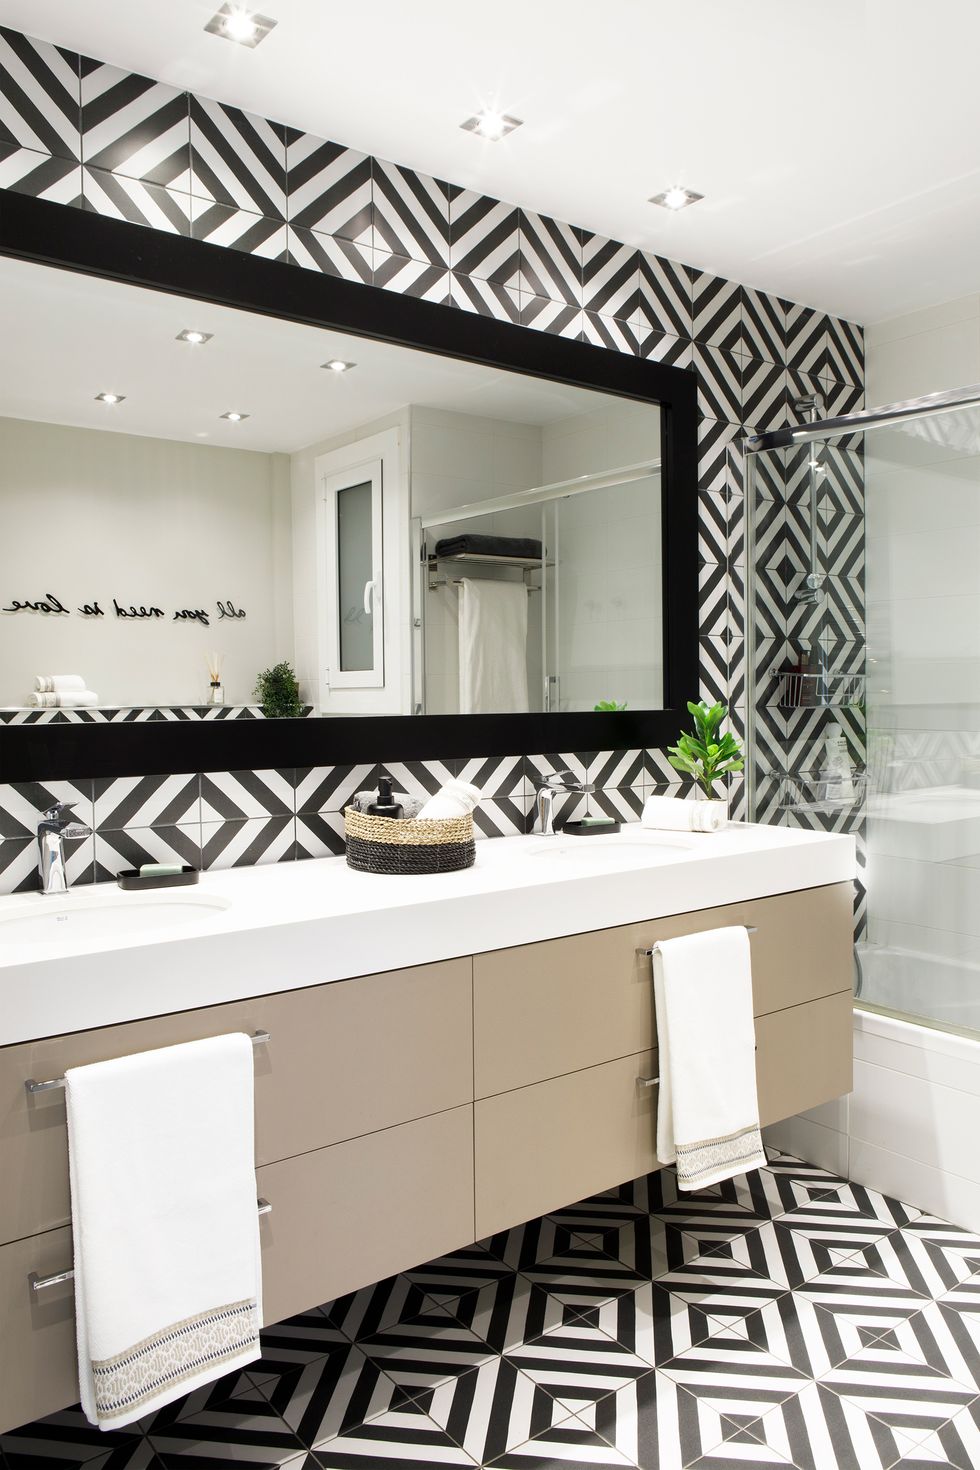 baño moderno con mueble suspendido y azulejos geométricos en blanco y negro